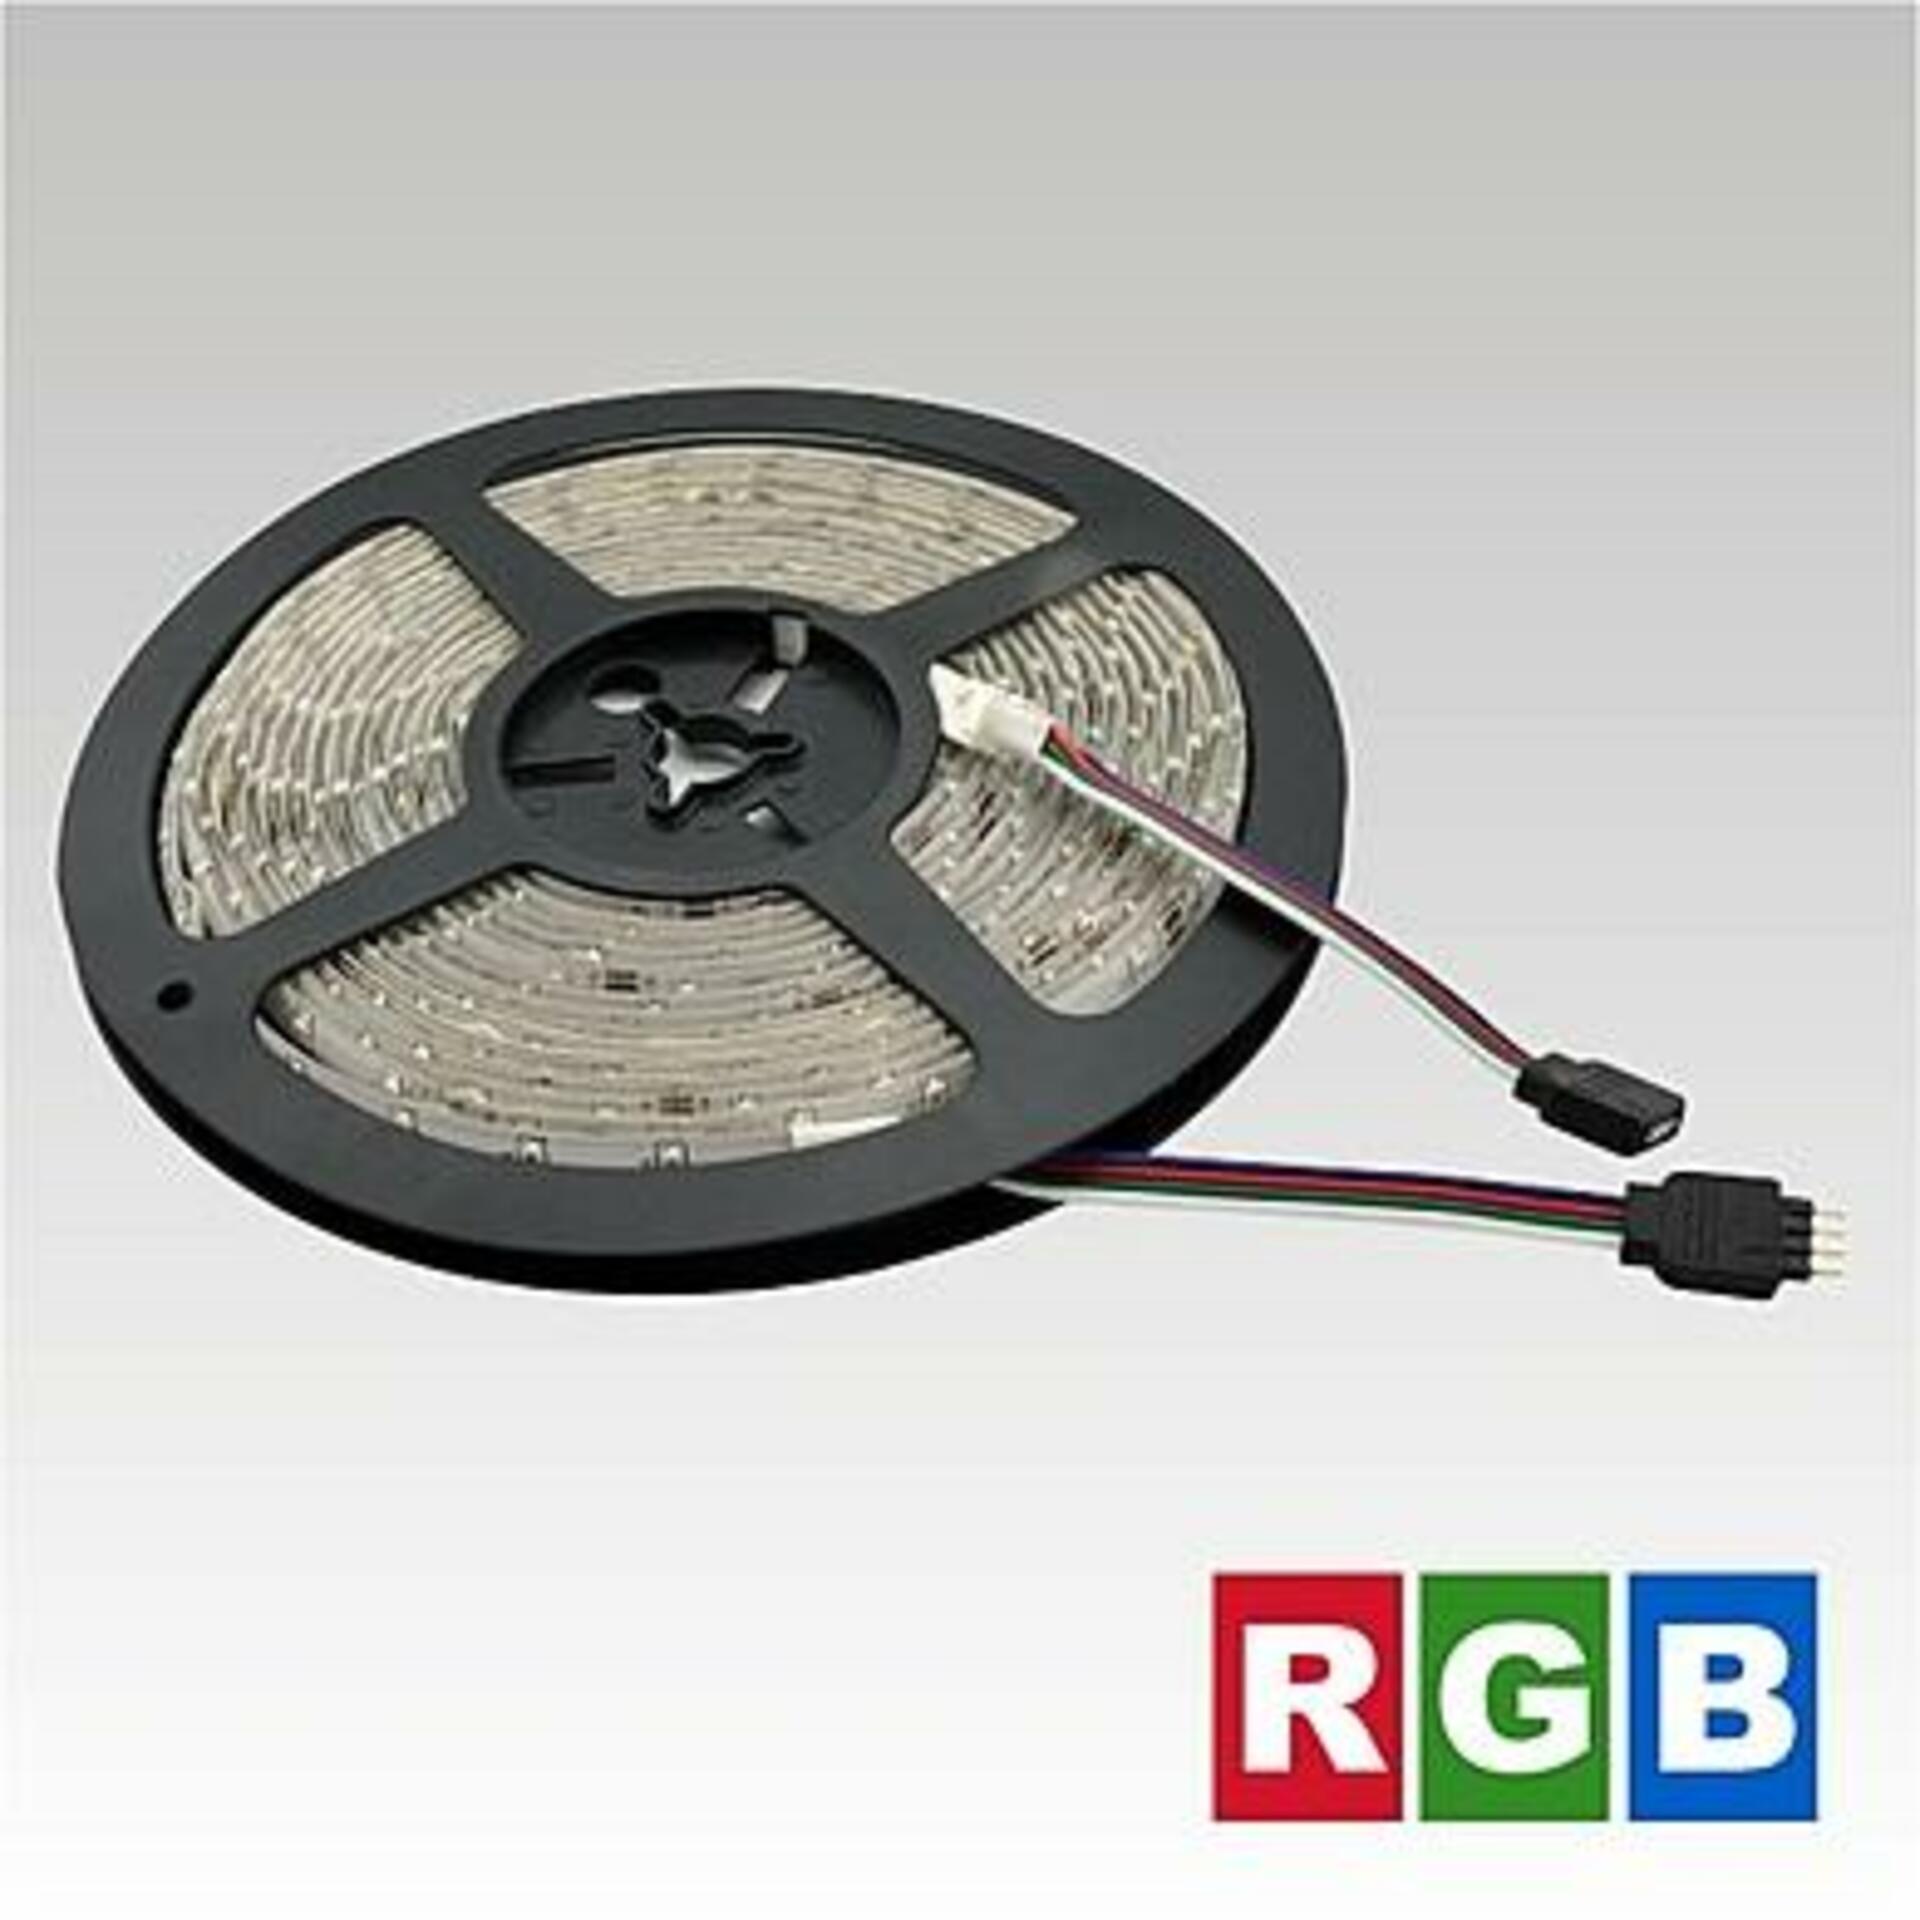 NBB LED pásek 12V 60LED/m SMD3528 RGB IP65 4.8W/m 903003020